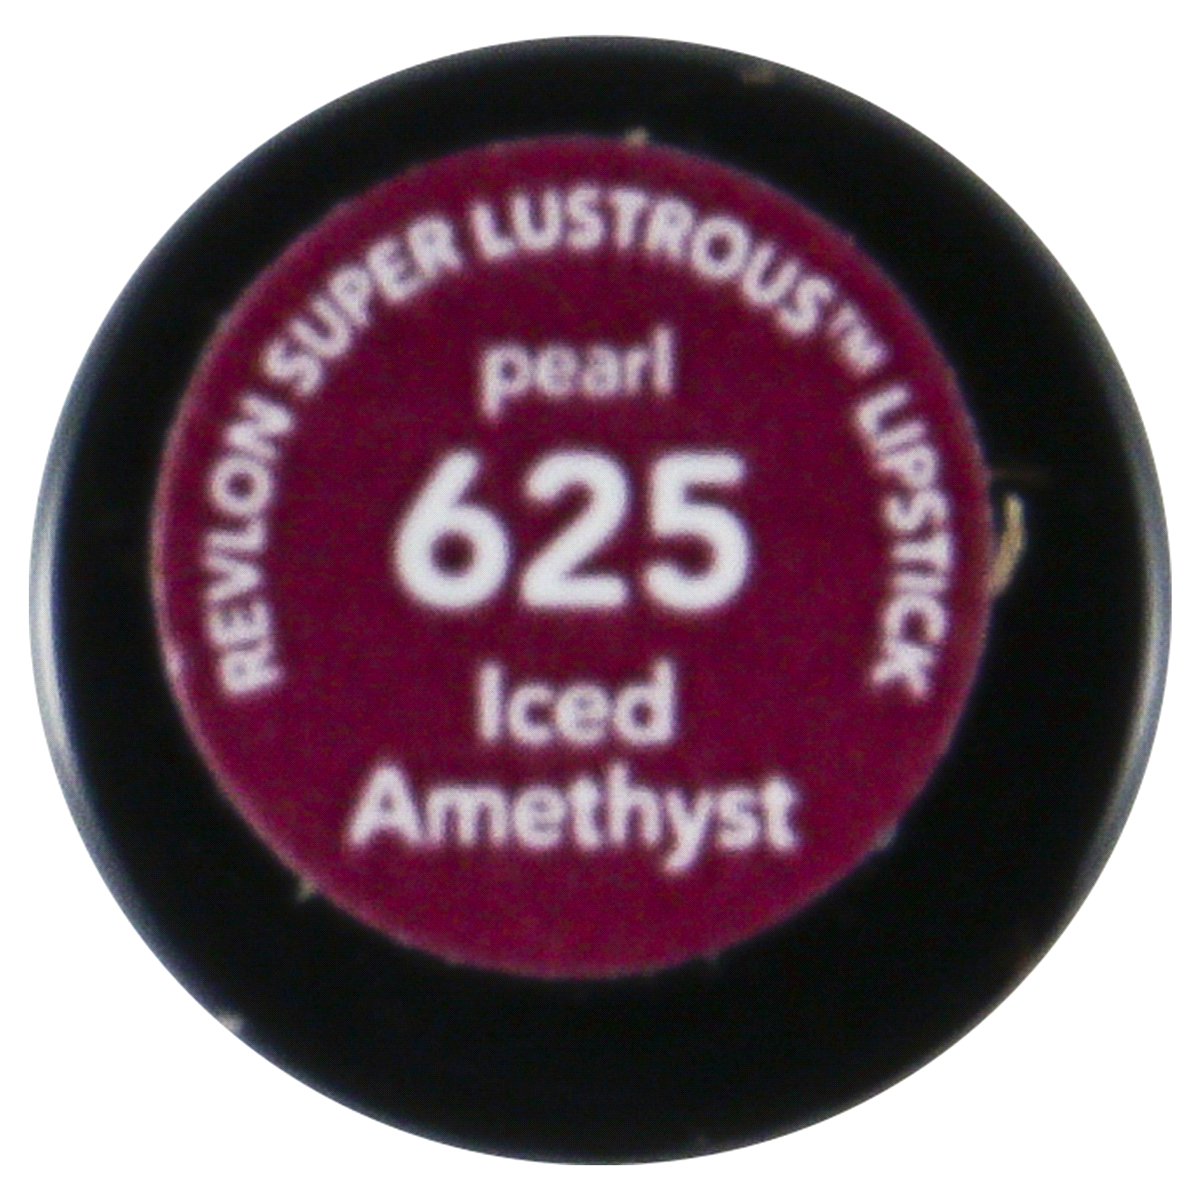 slide 26 of 52, Revlon Super Lustrous Lipstick - 625 Iced Amethyst - 0.15oz, 0.15 oz